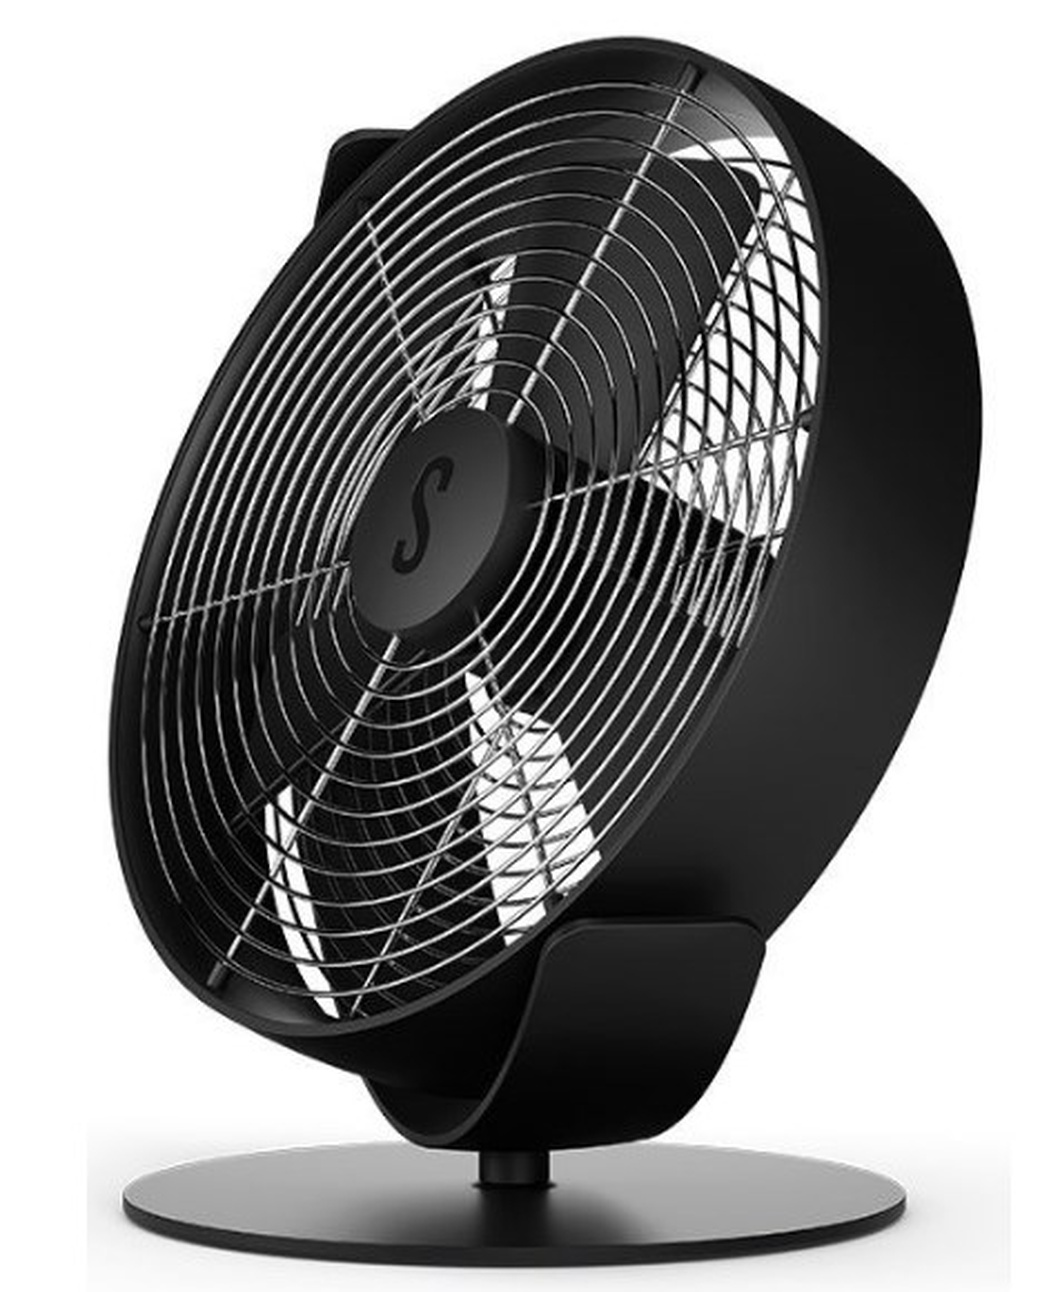 Вентилятор настольный Stadler Form Tim black, T-021, пластик+металл, черный фото